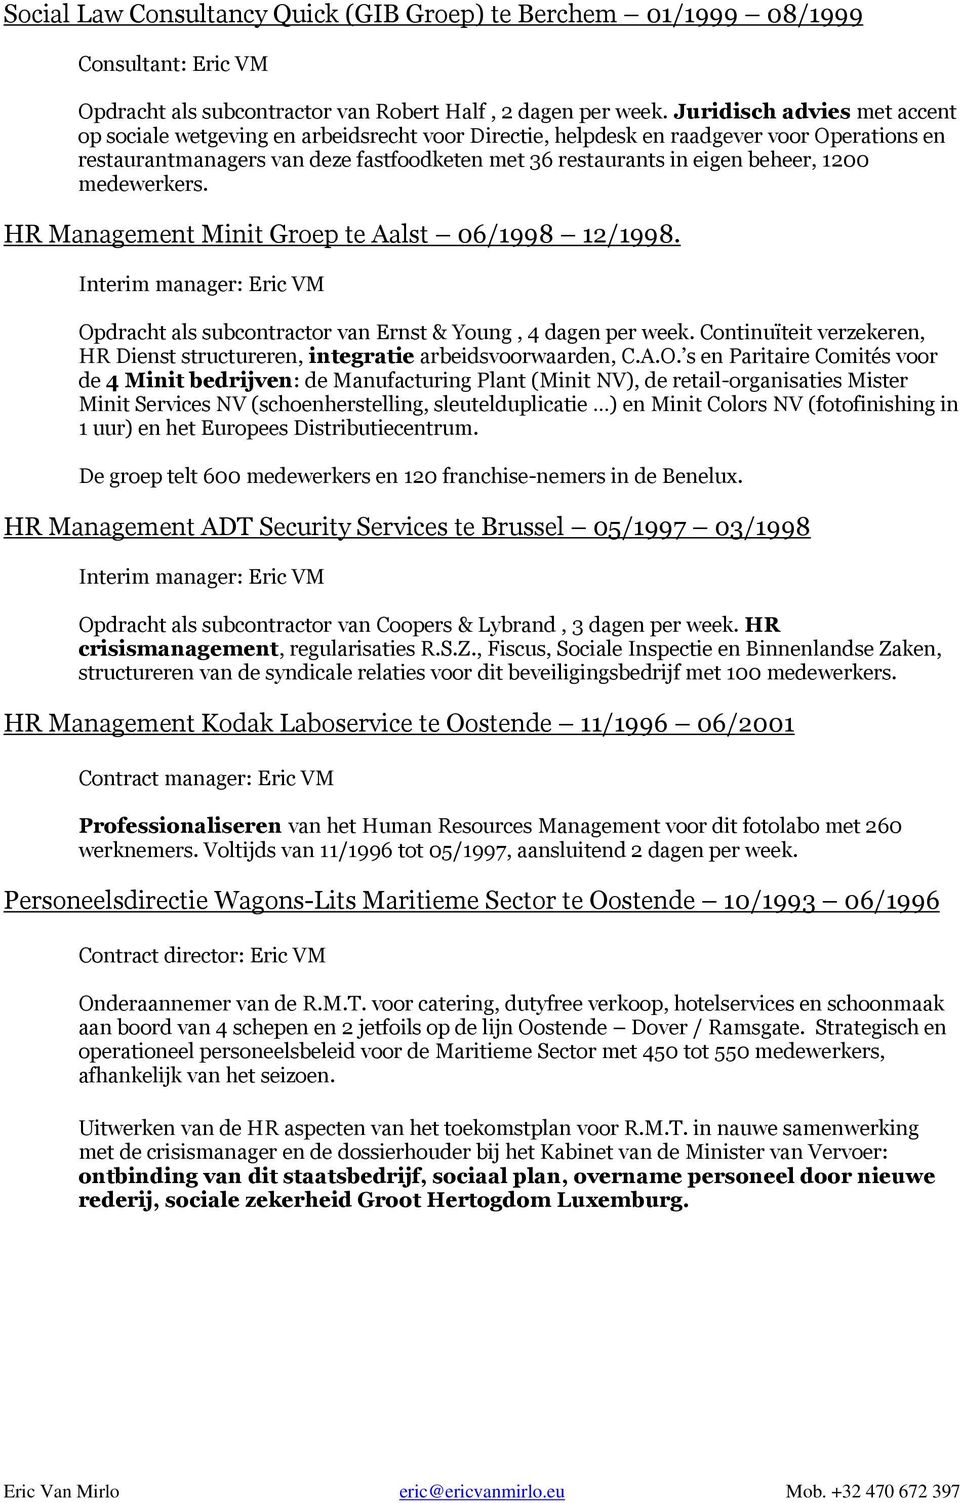 1200 medewerkers. HR Management Minit Groep te Aalst 06/1998 12/1998. Opdracht als subcontractor van Ernst & Young, 4 dagen per week.